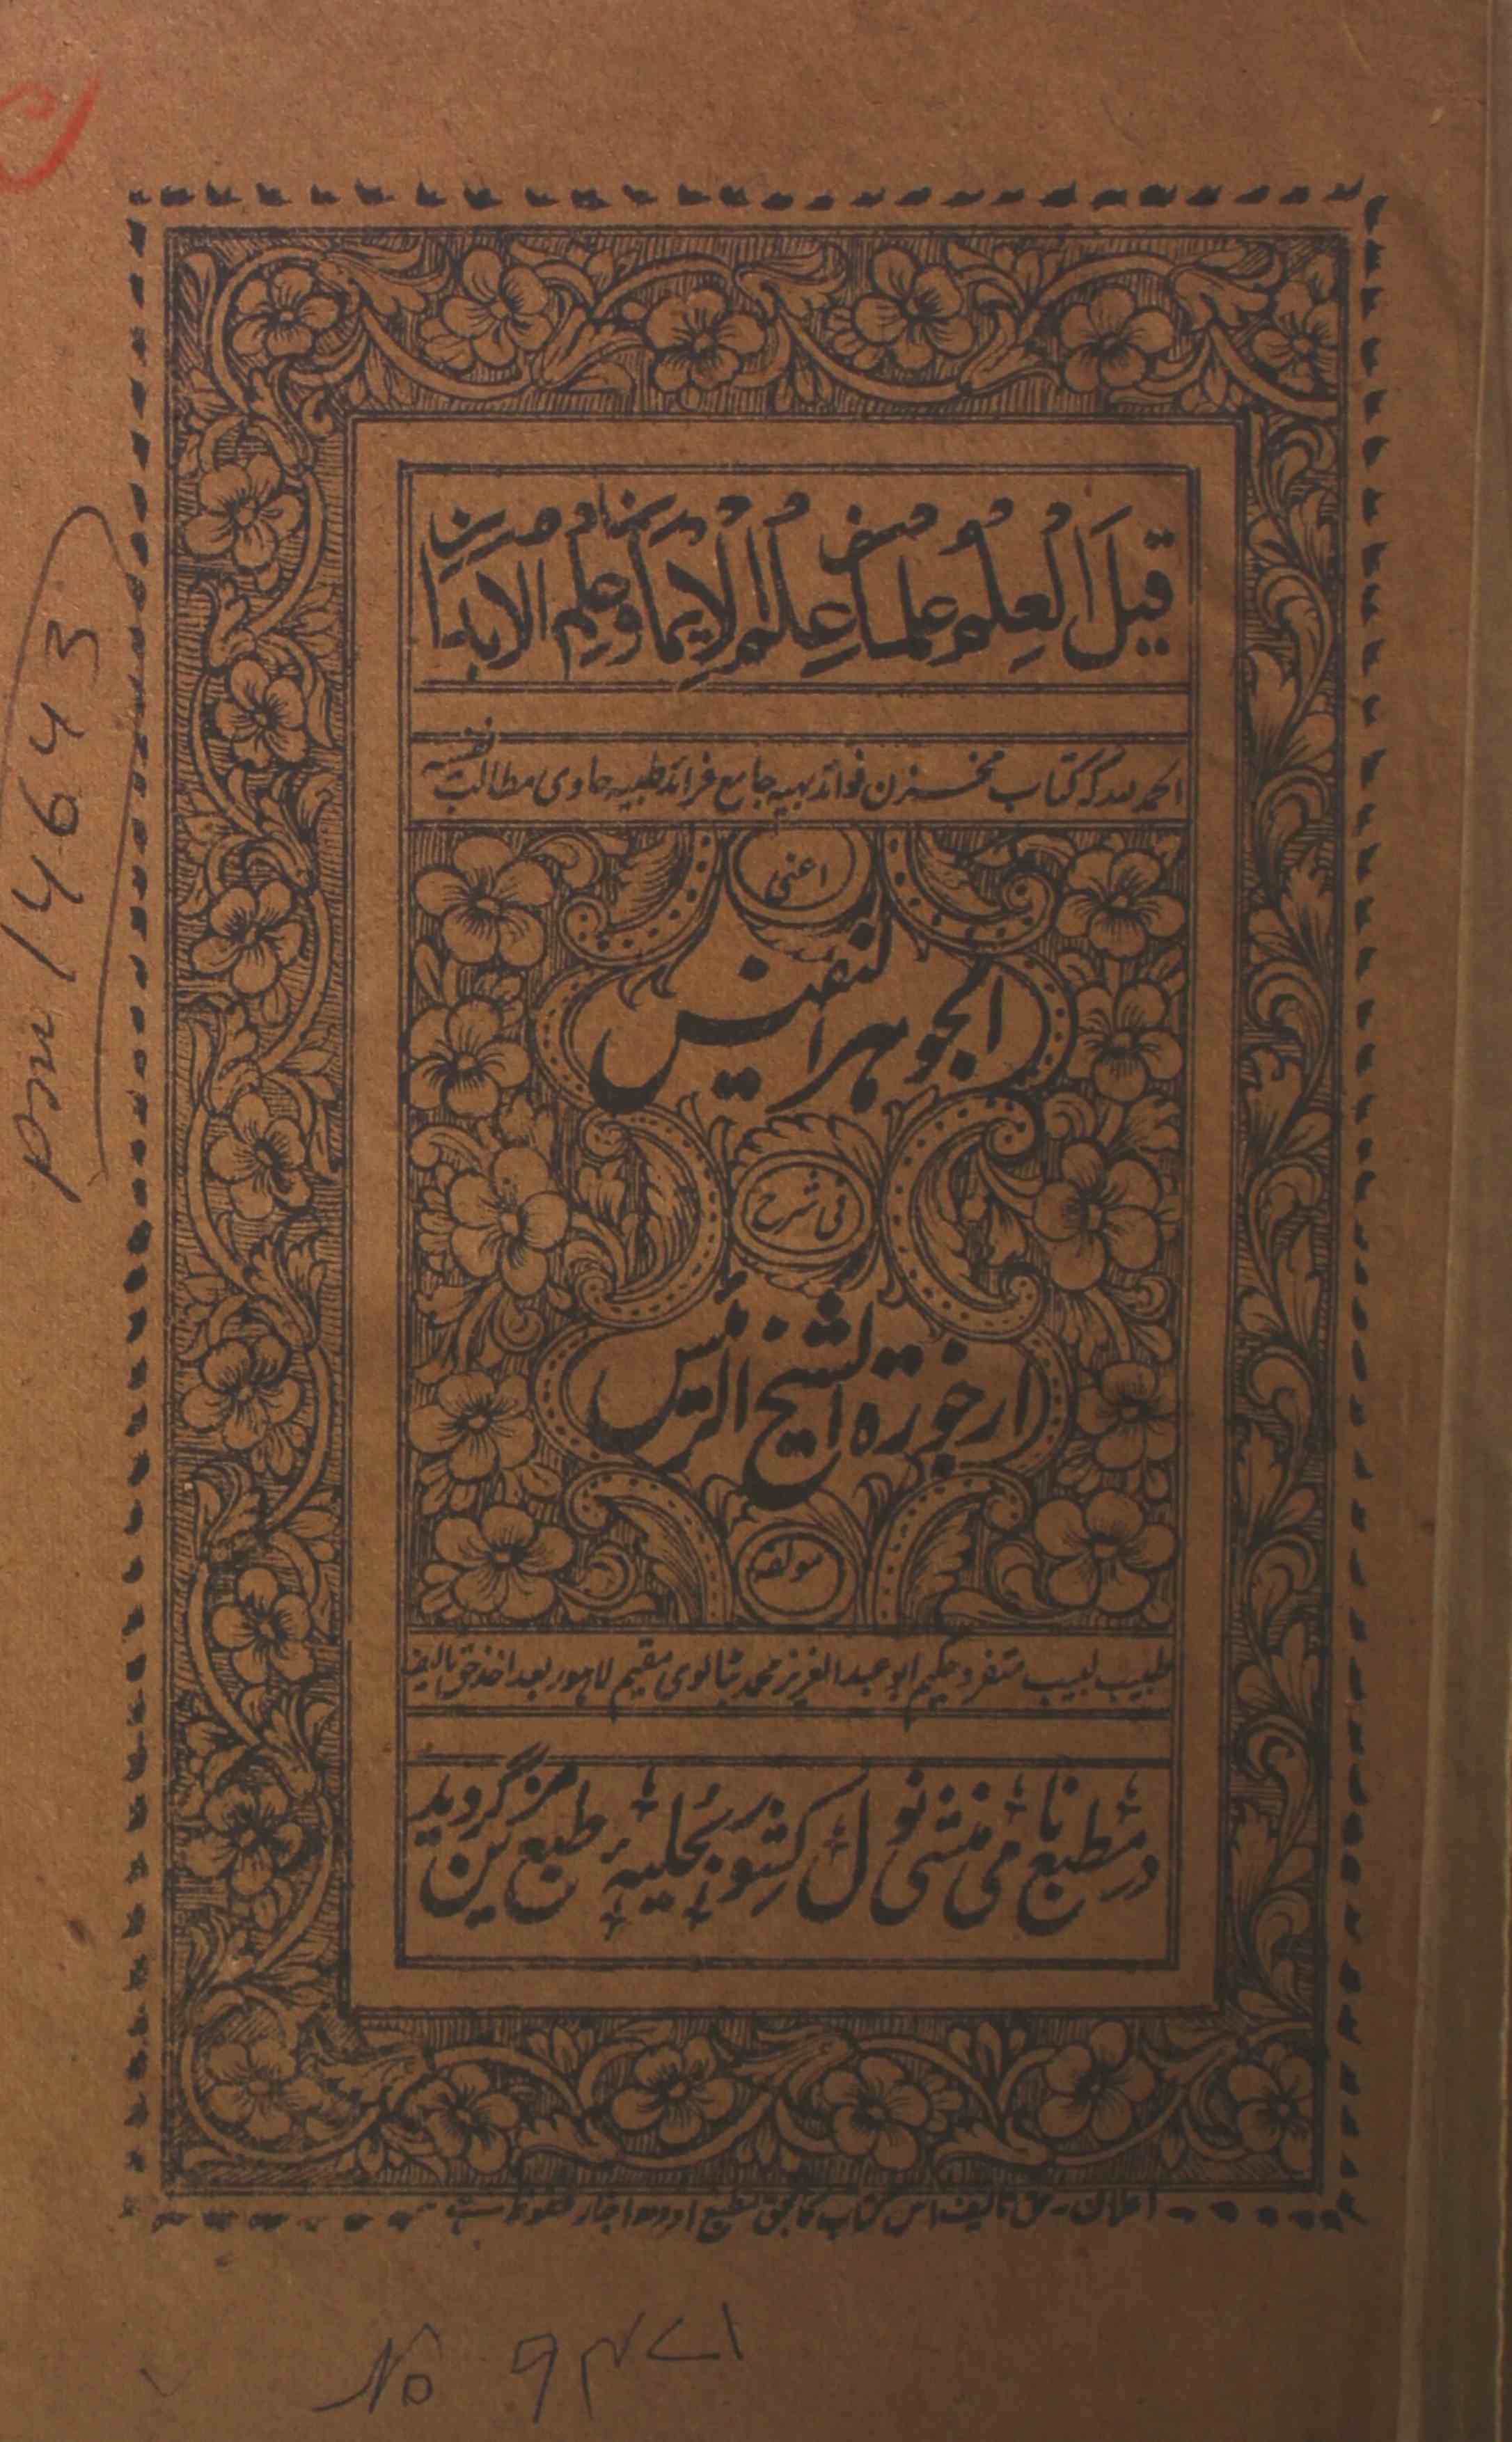 Al-Jauhar-ul-Nafees